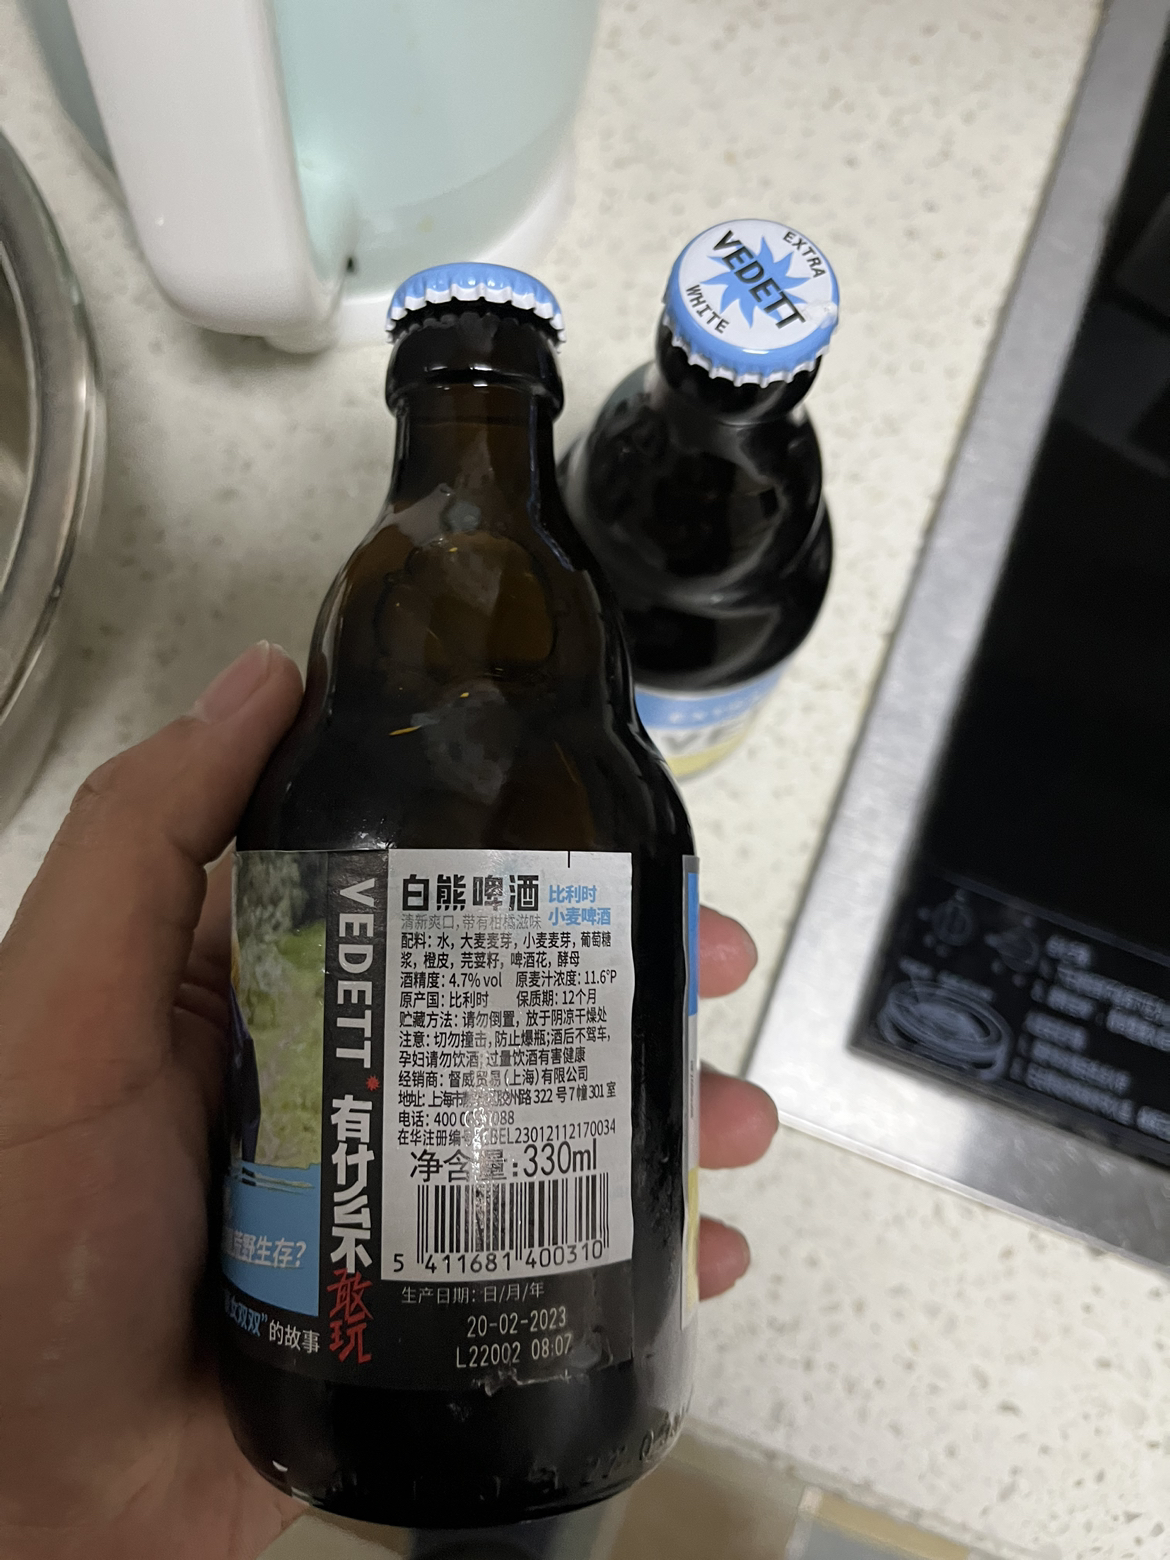 白熊啤酒 比利时进口 啤酒 小麦啤酒 精酿啤酒 330ml*6瓶装晒单图